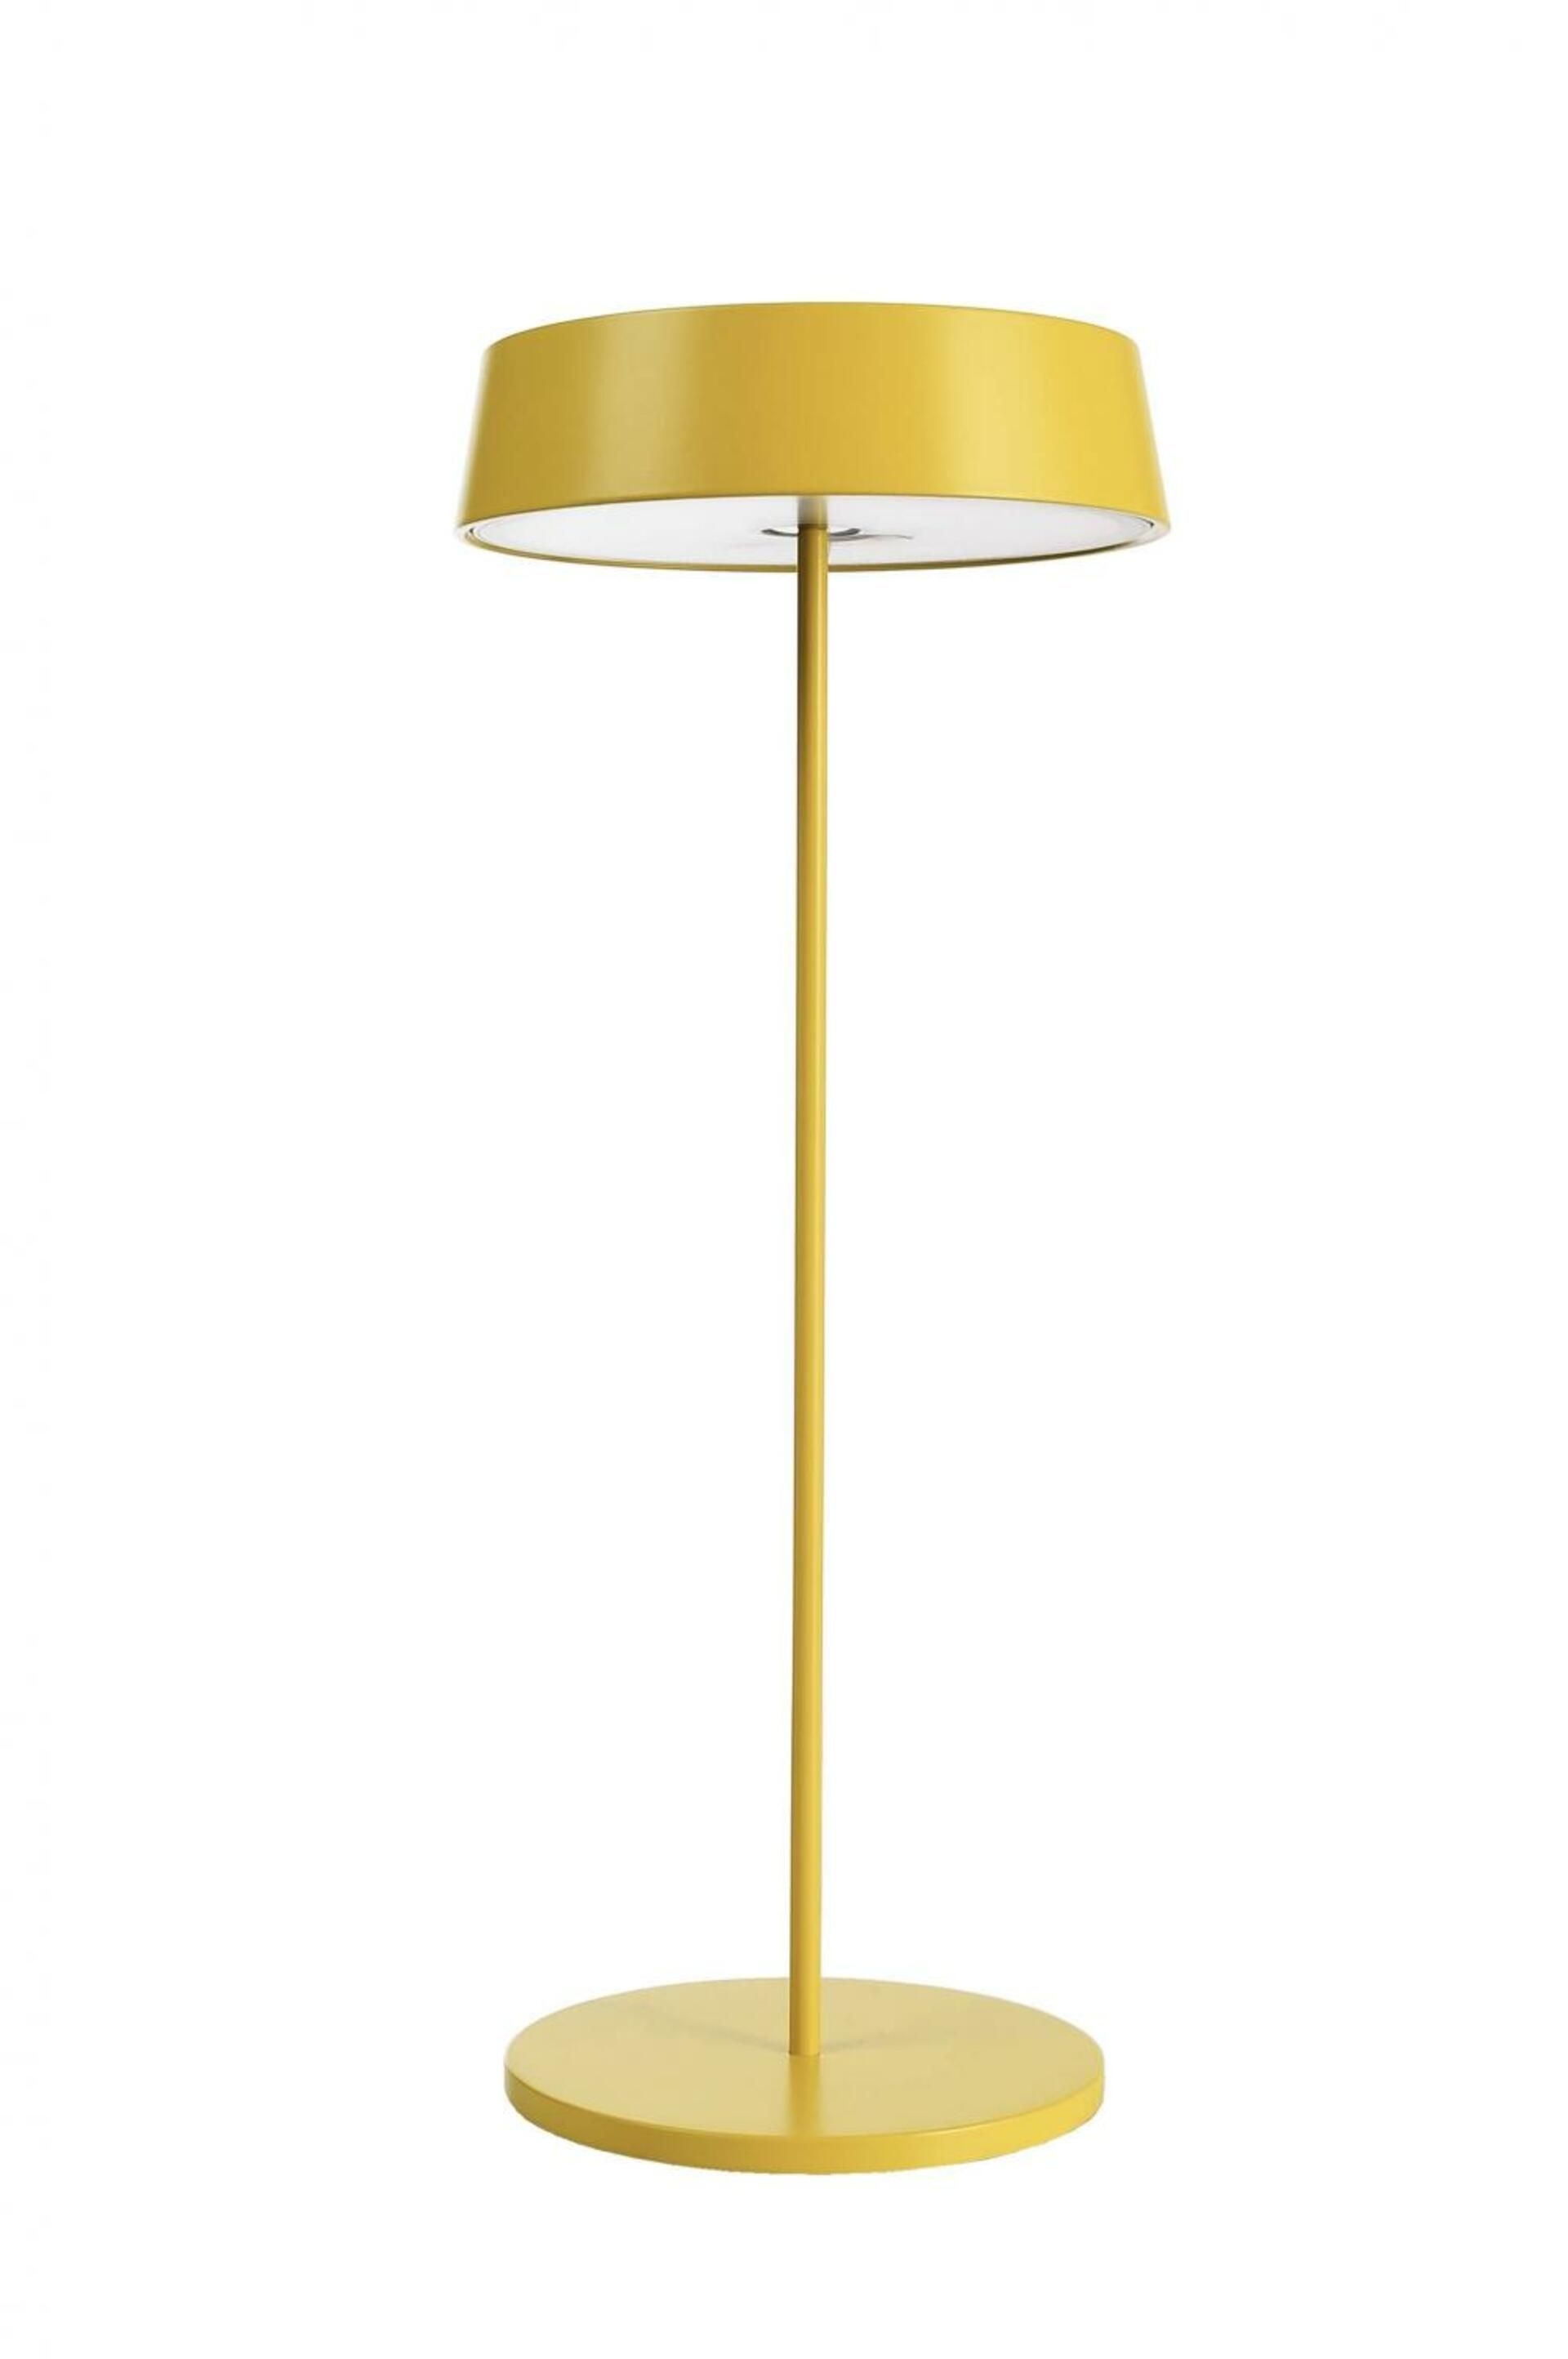 Light Impressions Deko-Light stolní lampa Miram stojací noha + hlava žlutá sada 3,7V DC 2,20 W 3000 K 196 lm 120 žlutá 620100